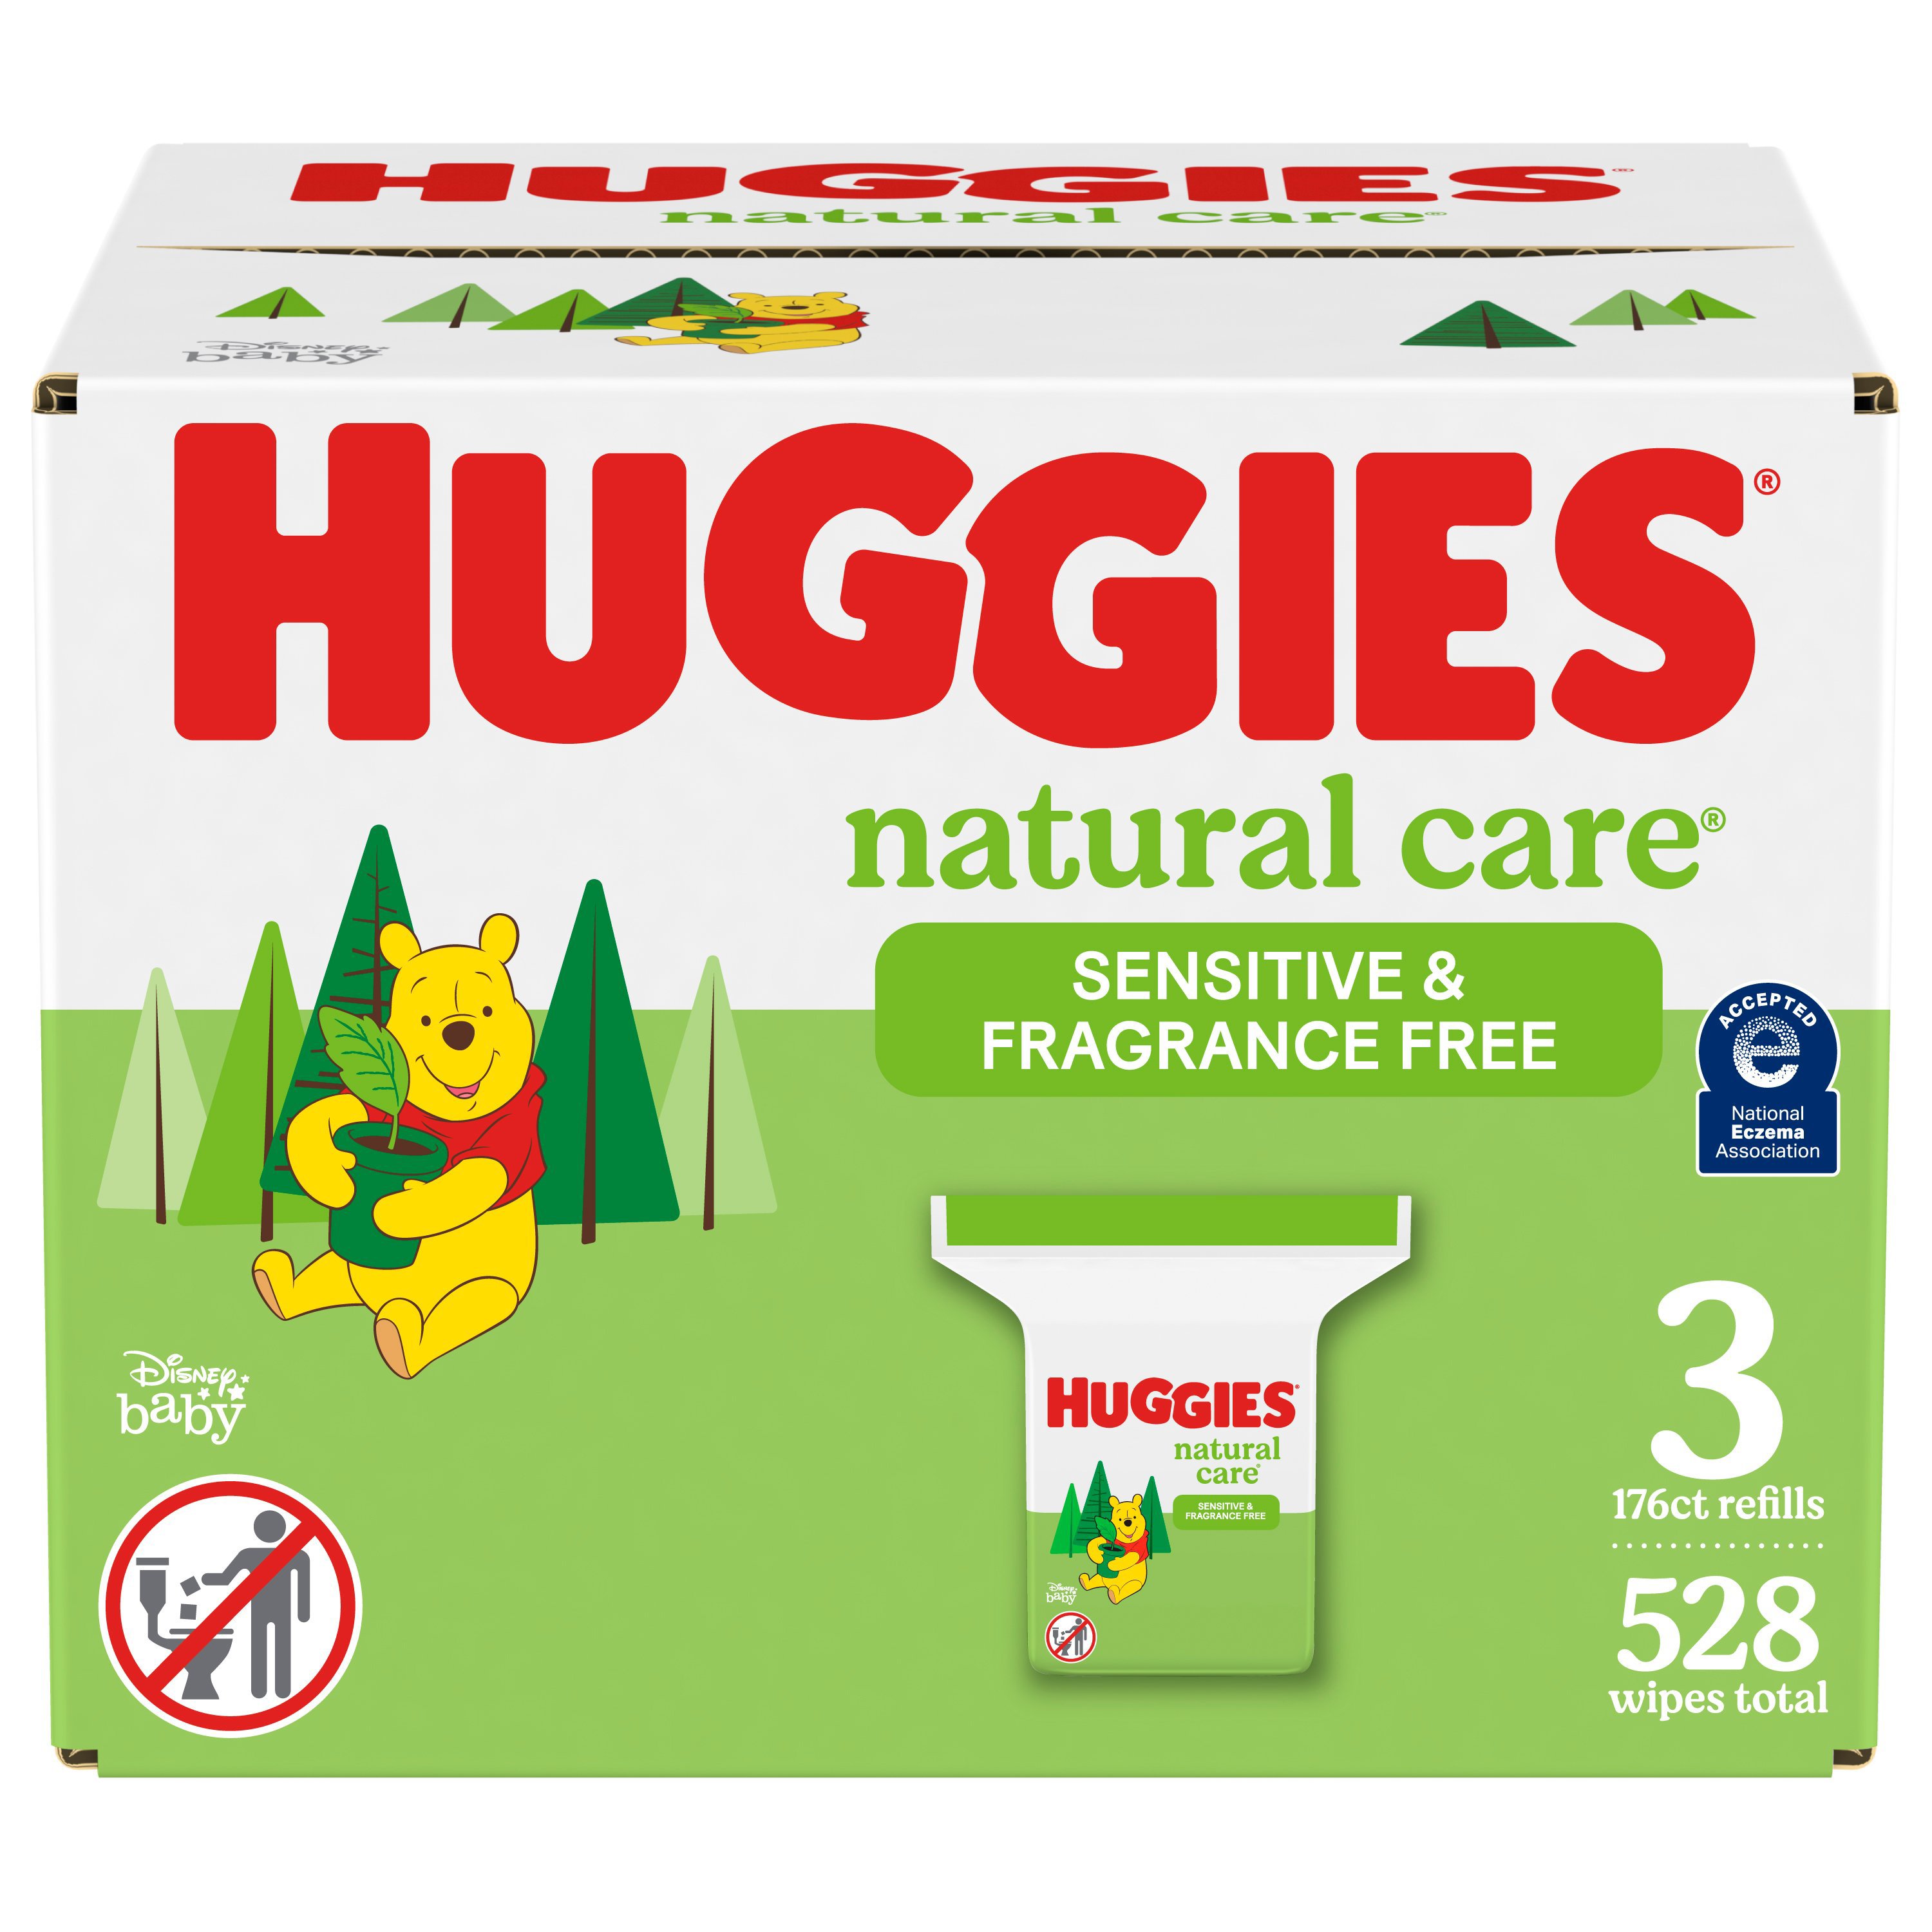 huggies natural care refill